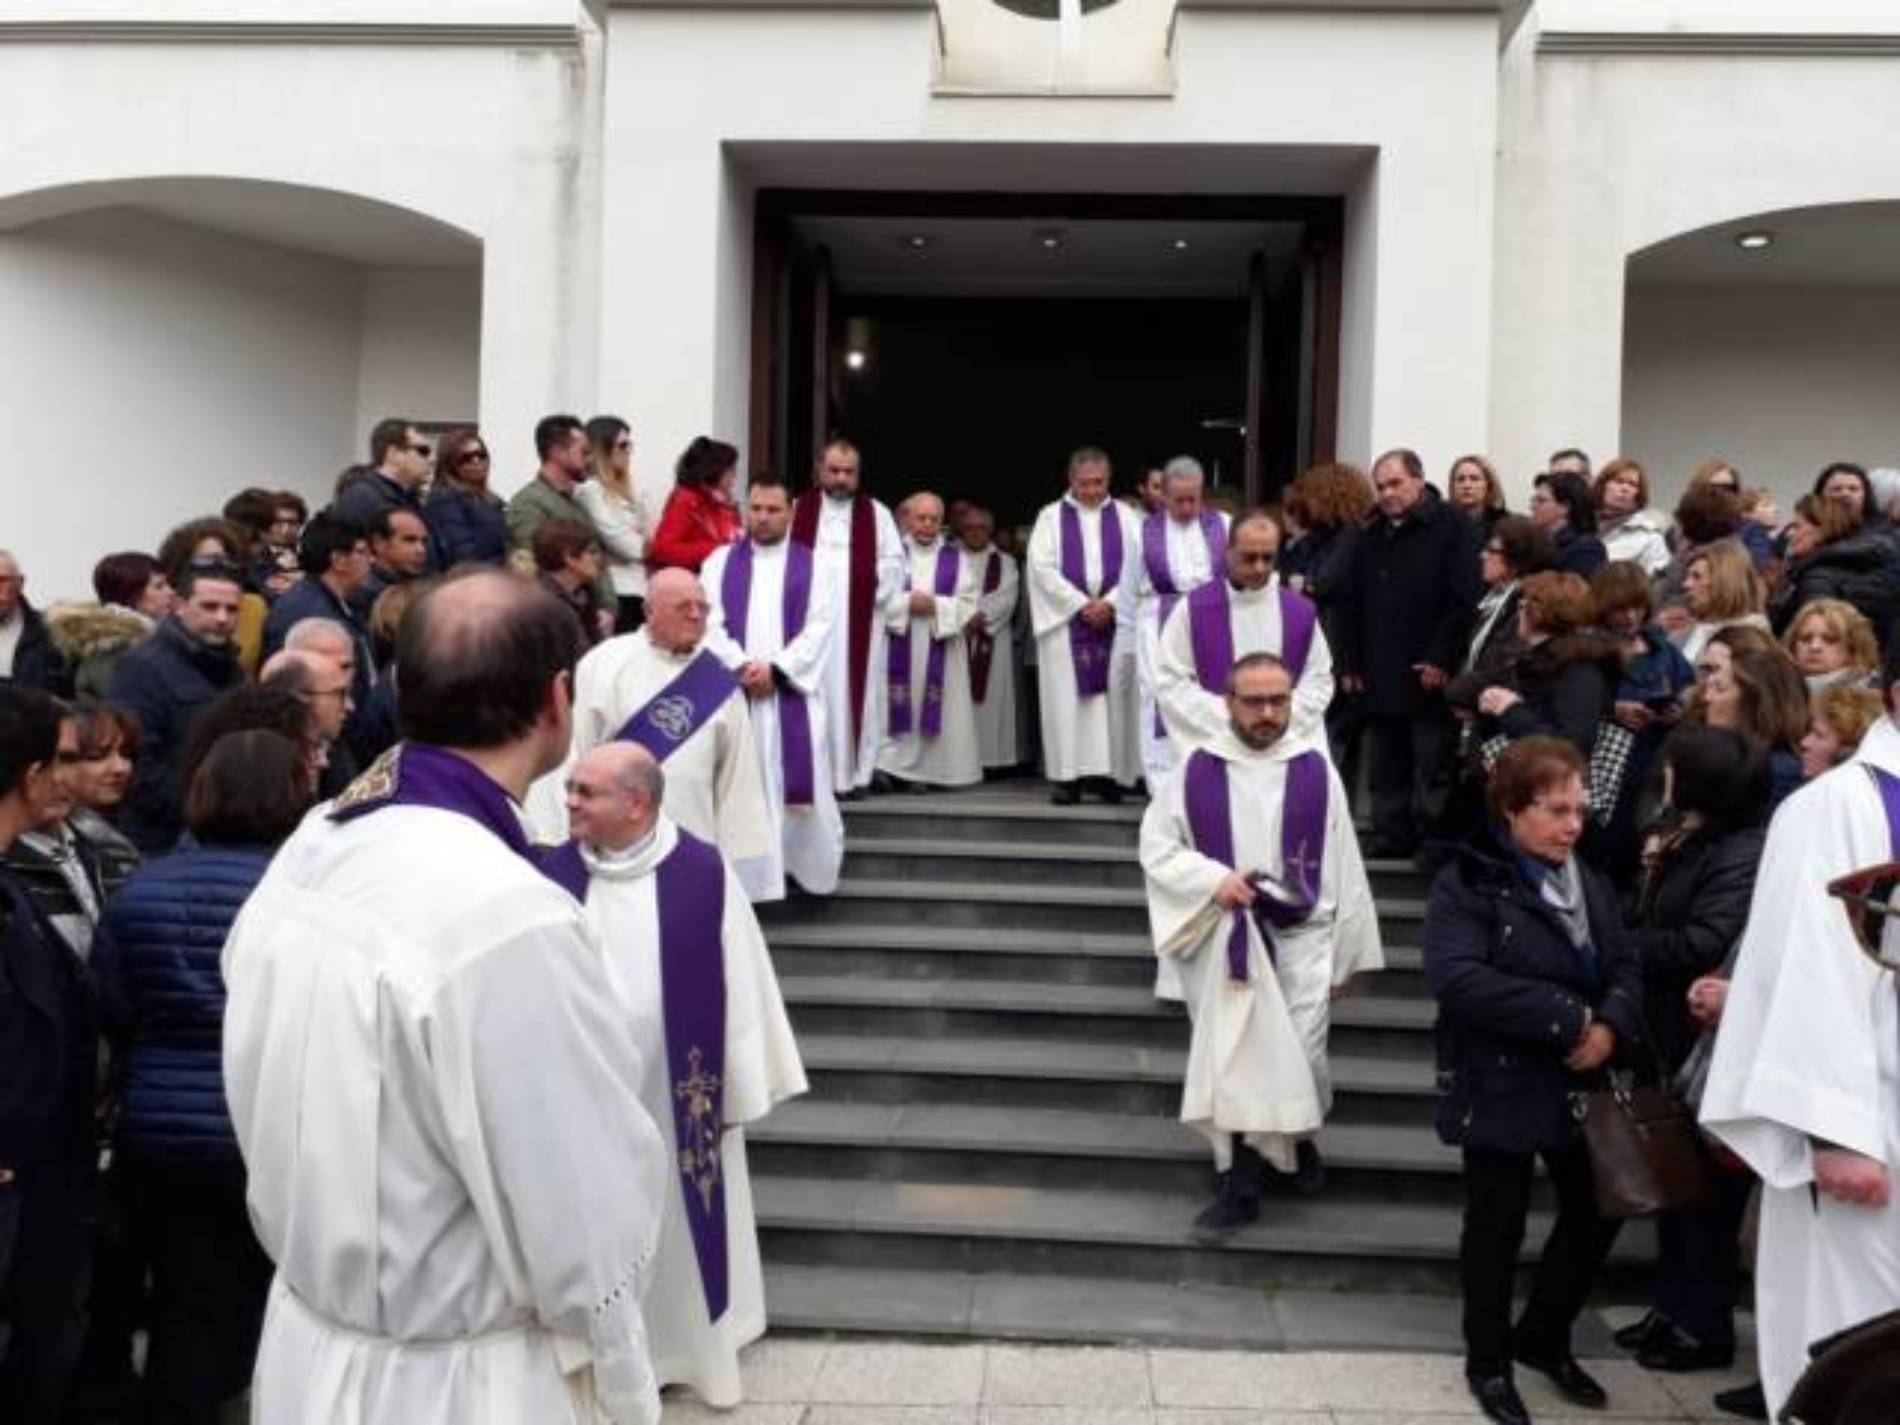 BARRAFRANCA. Funerali di don Giovanni Pinnisi. Chiesa “Sacra Famiglia” stracolma di gente